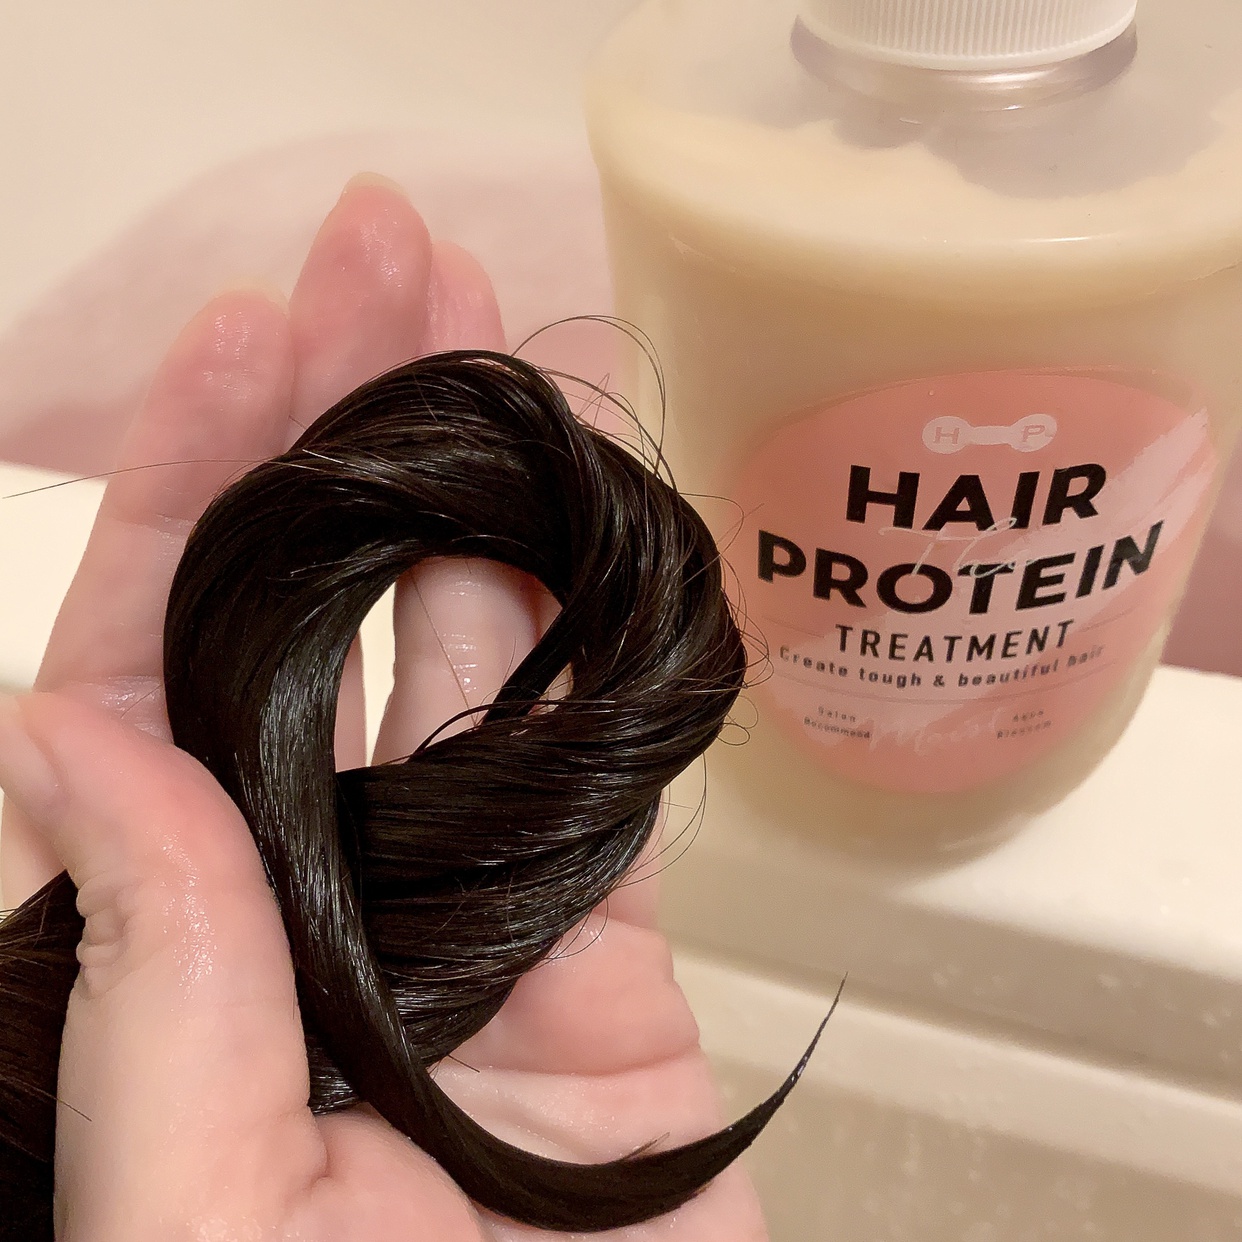 Hair The Protein(ヘアザプロテイン) モイストヘアトリートメントを使ったうりむー姉さんさんのクチコミ画像5